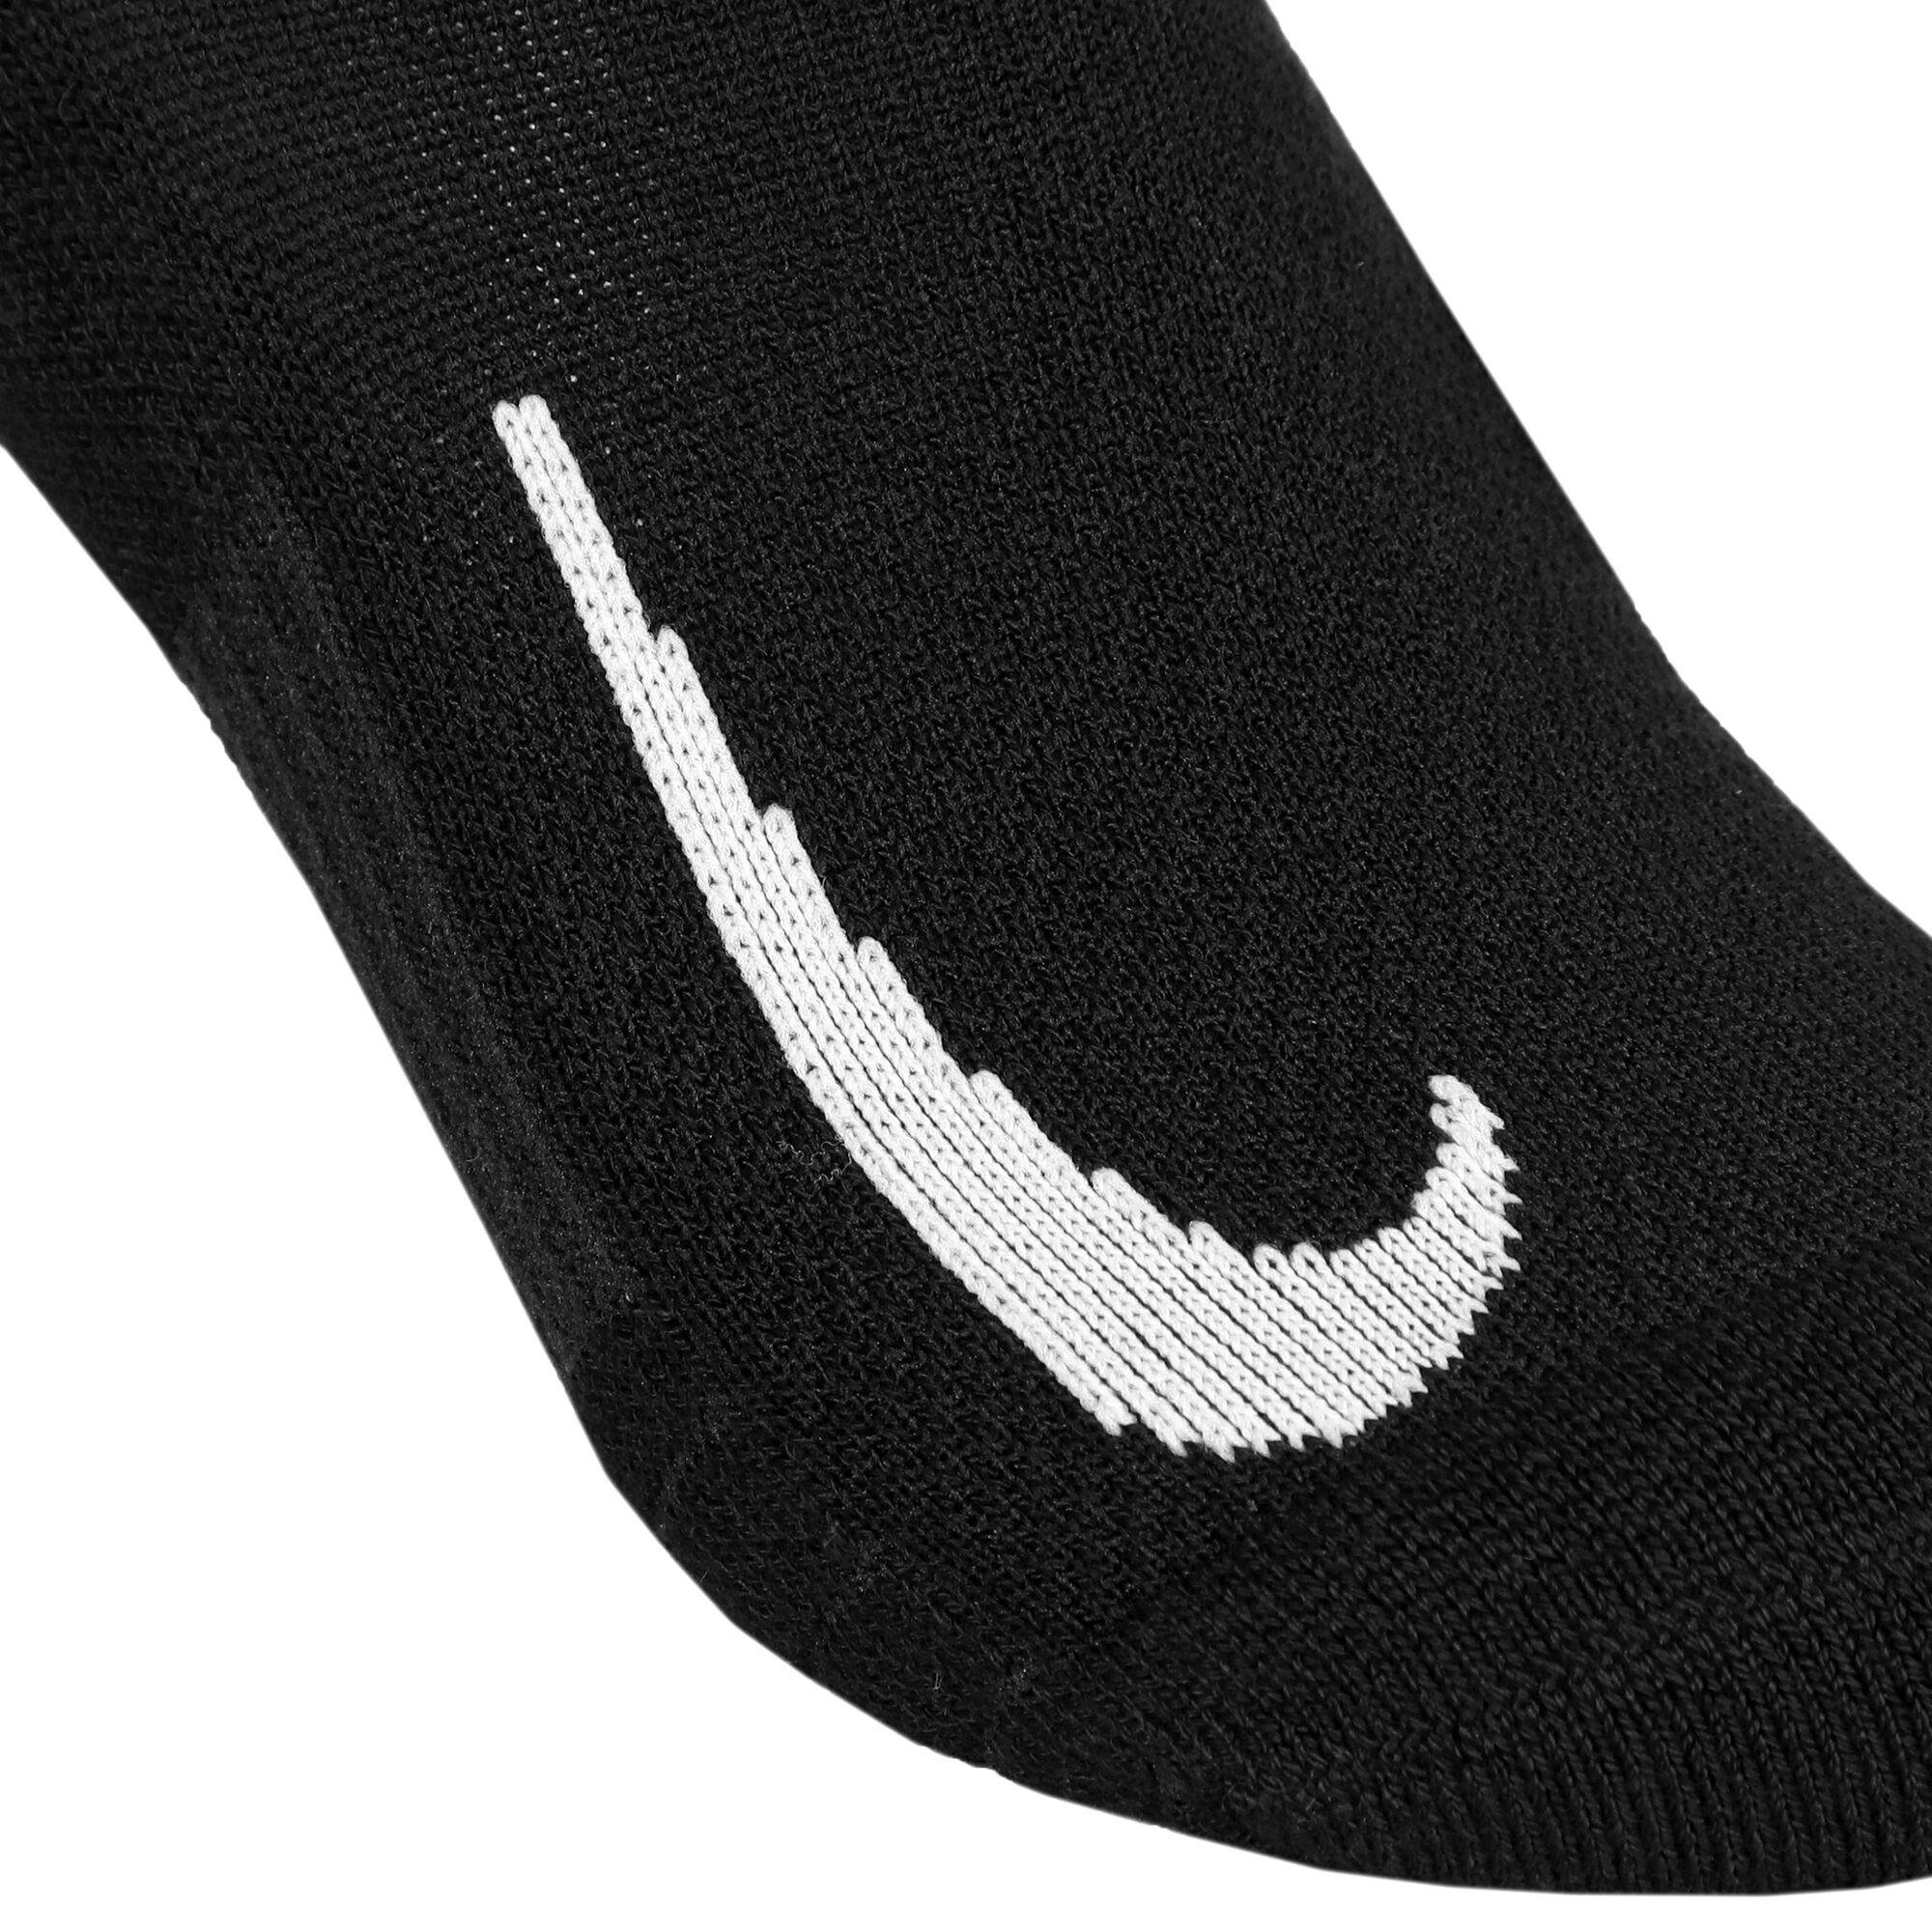 Buy Nike Court Multiplier Cushioned Tennis Socks 2 Pack Black, White online